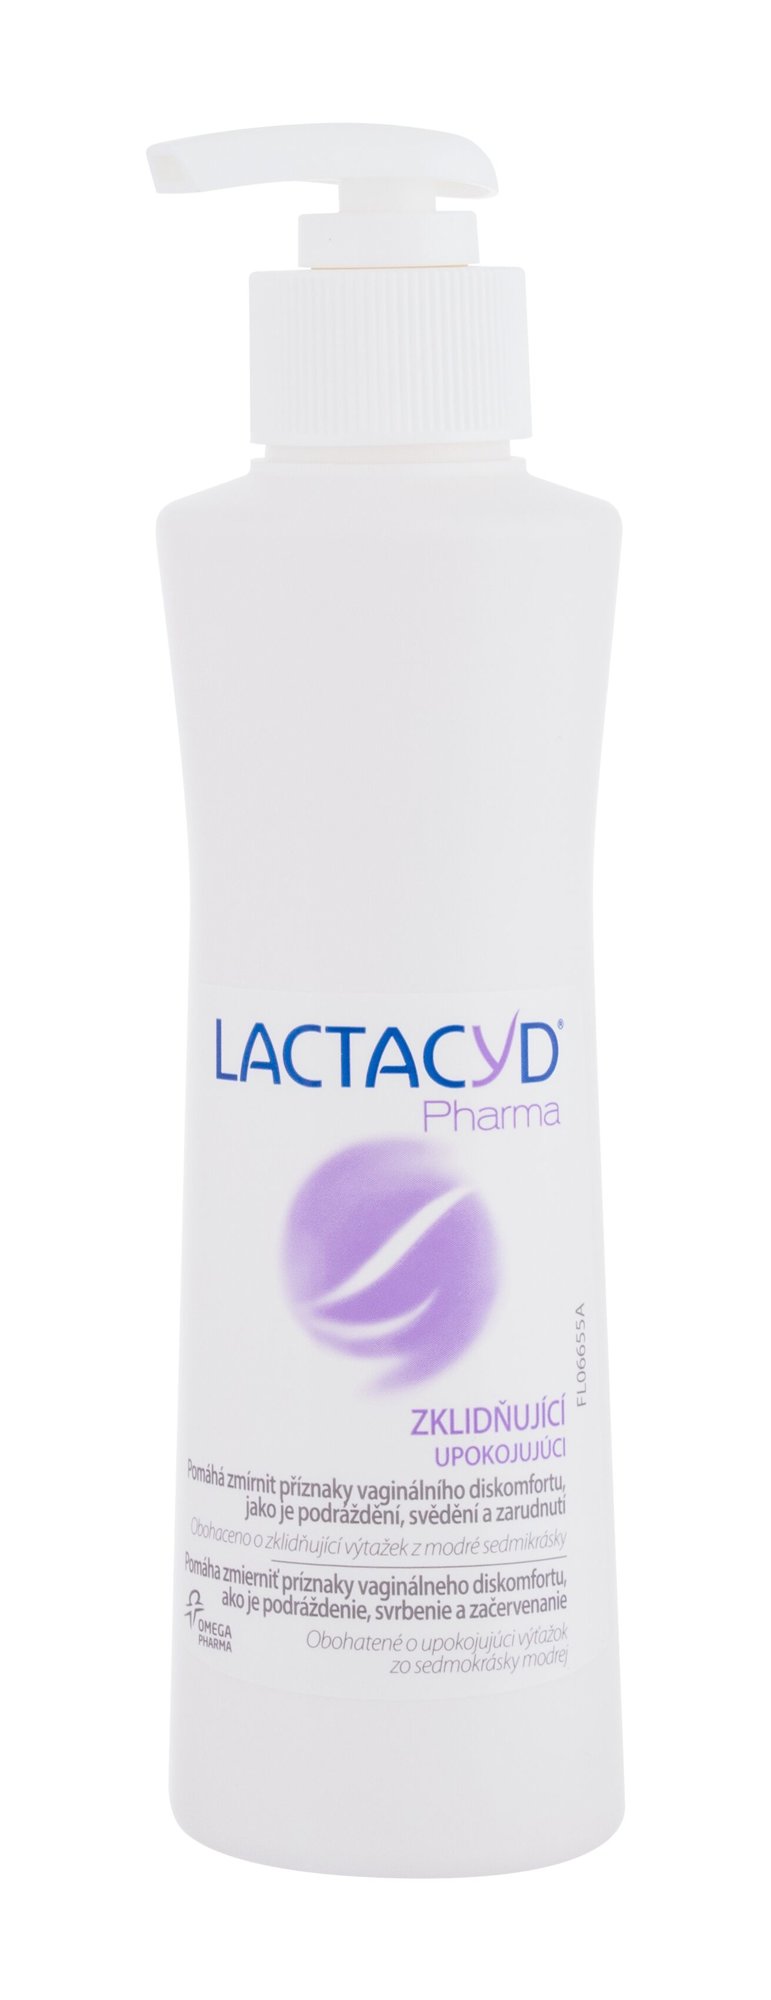 Lactacyd Pharma intymios higienos priežiūra